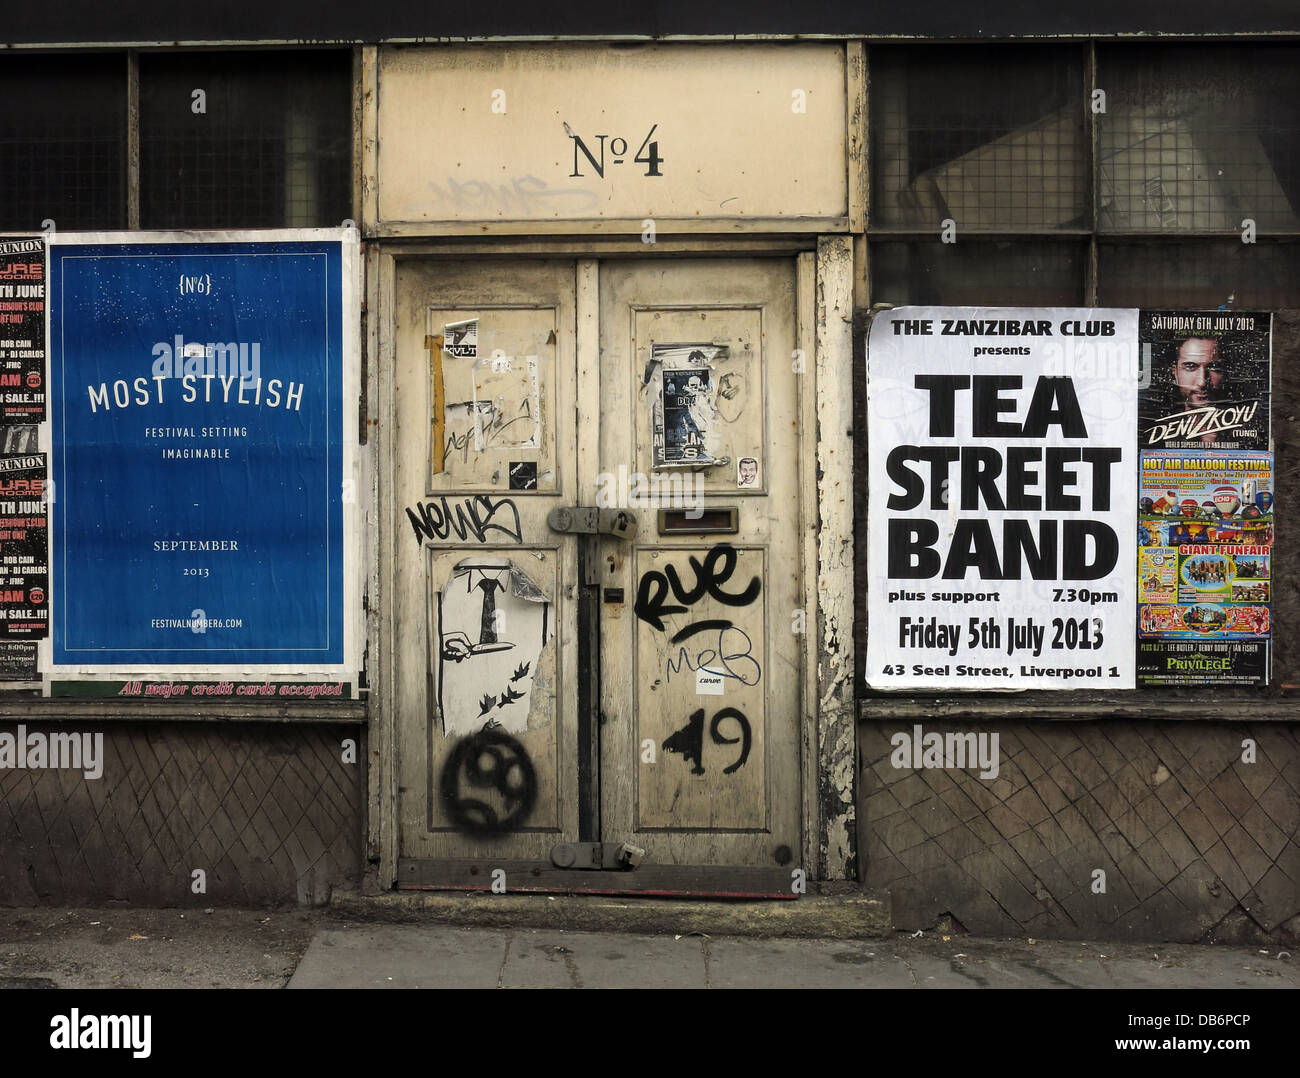 No4, vieille porte,bâtiment abandonné avec affiches, Liverpool, Merseyside, North West England, UK Banque D'Images